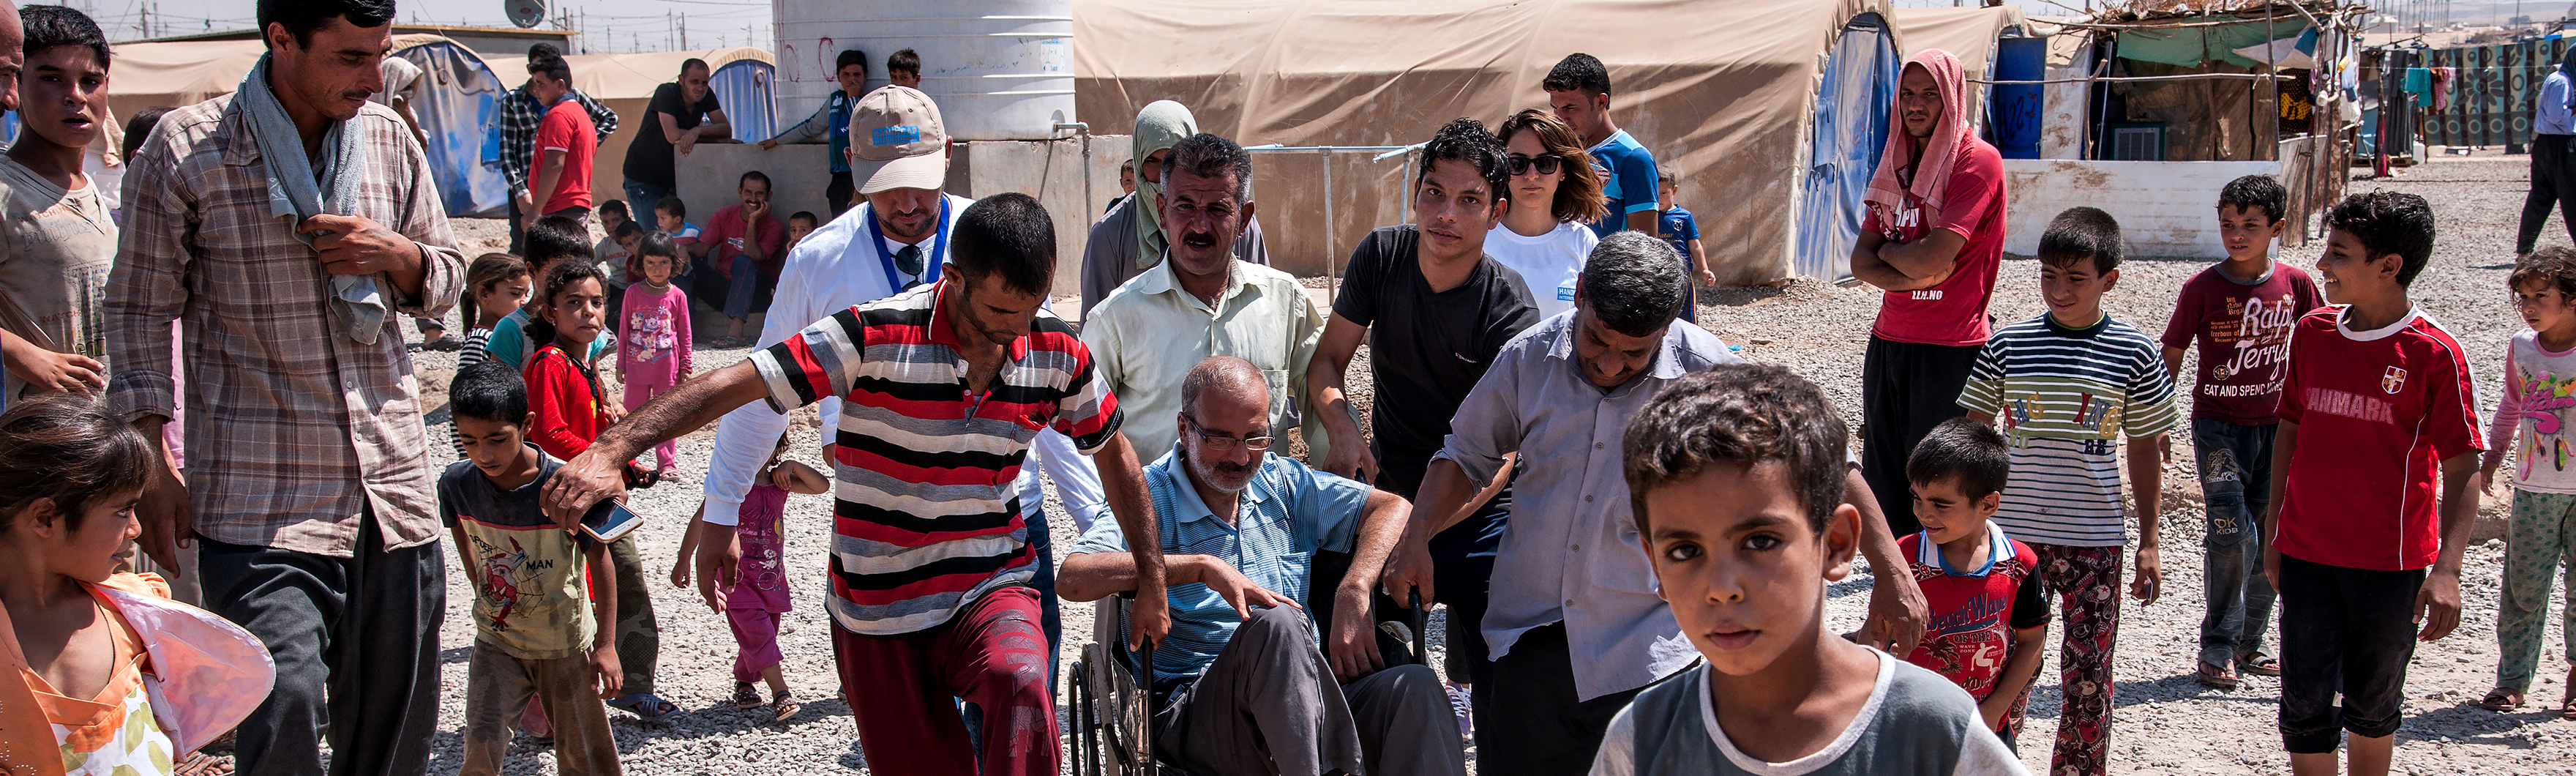 Irak, camp Khazer M1, une équipe psychosociale de HI évalue avec un bénéficiaire les difficultés pour se déplacer dans le camp avec un fauteuil roulant.